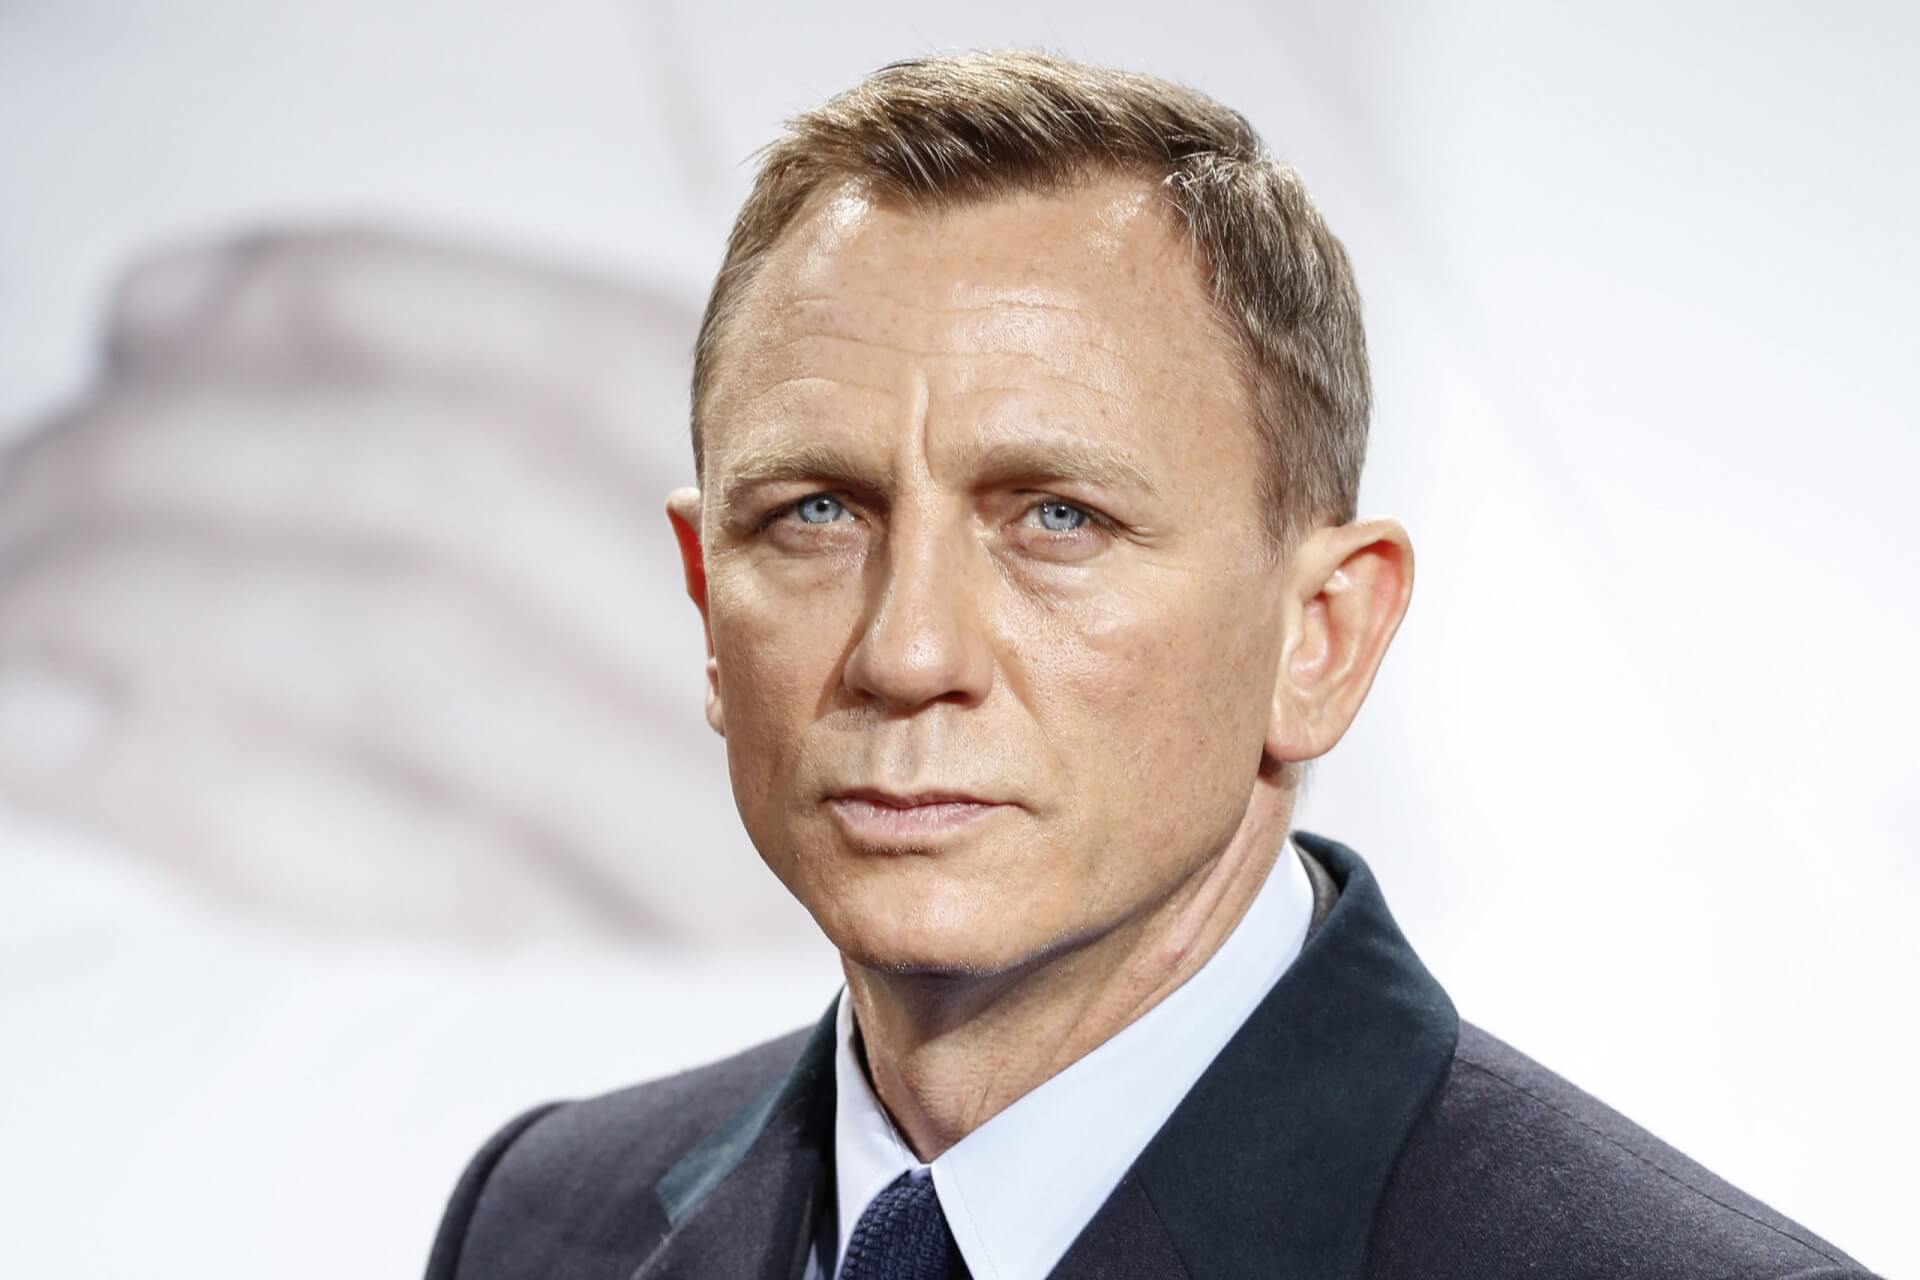 Még nincs meg Daniel Craig utódja, de a James Bond producerei legalább 10 évig számolnak az utódjával